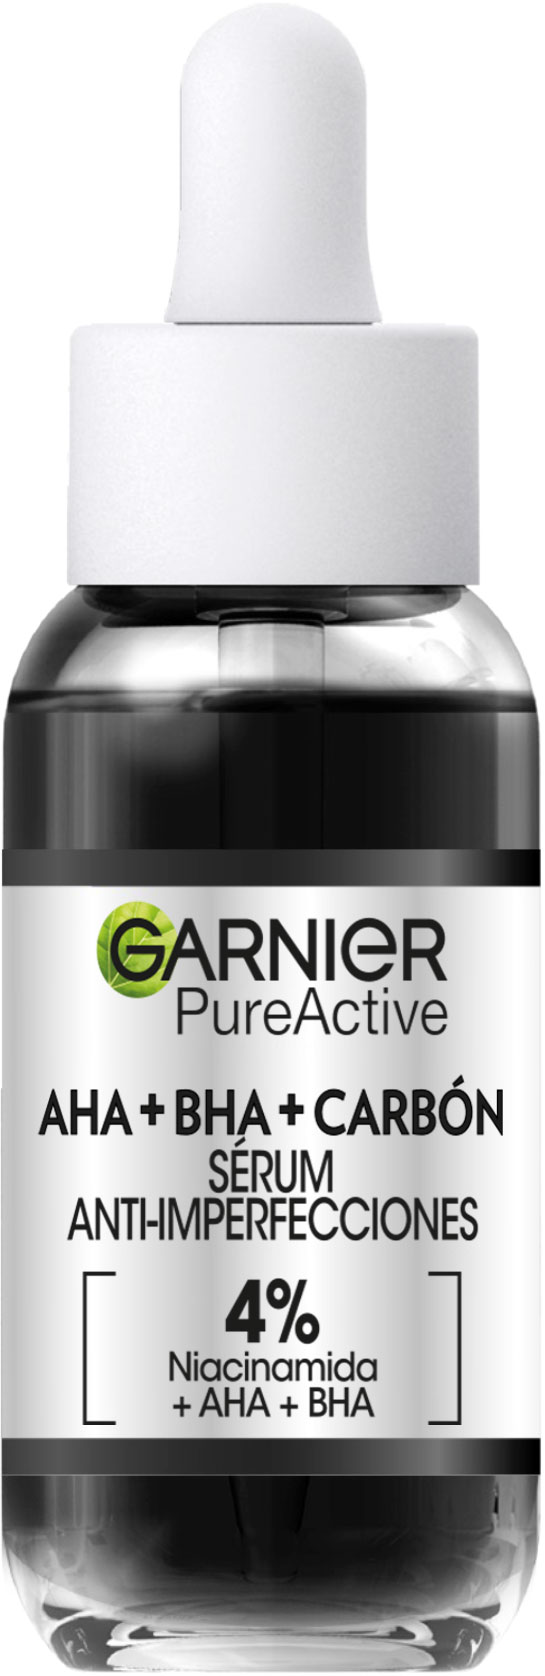 Serum Carbon Pure Active De Garnier